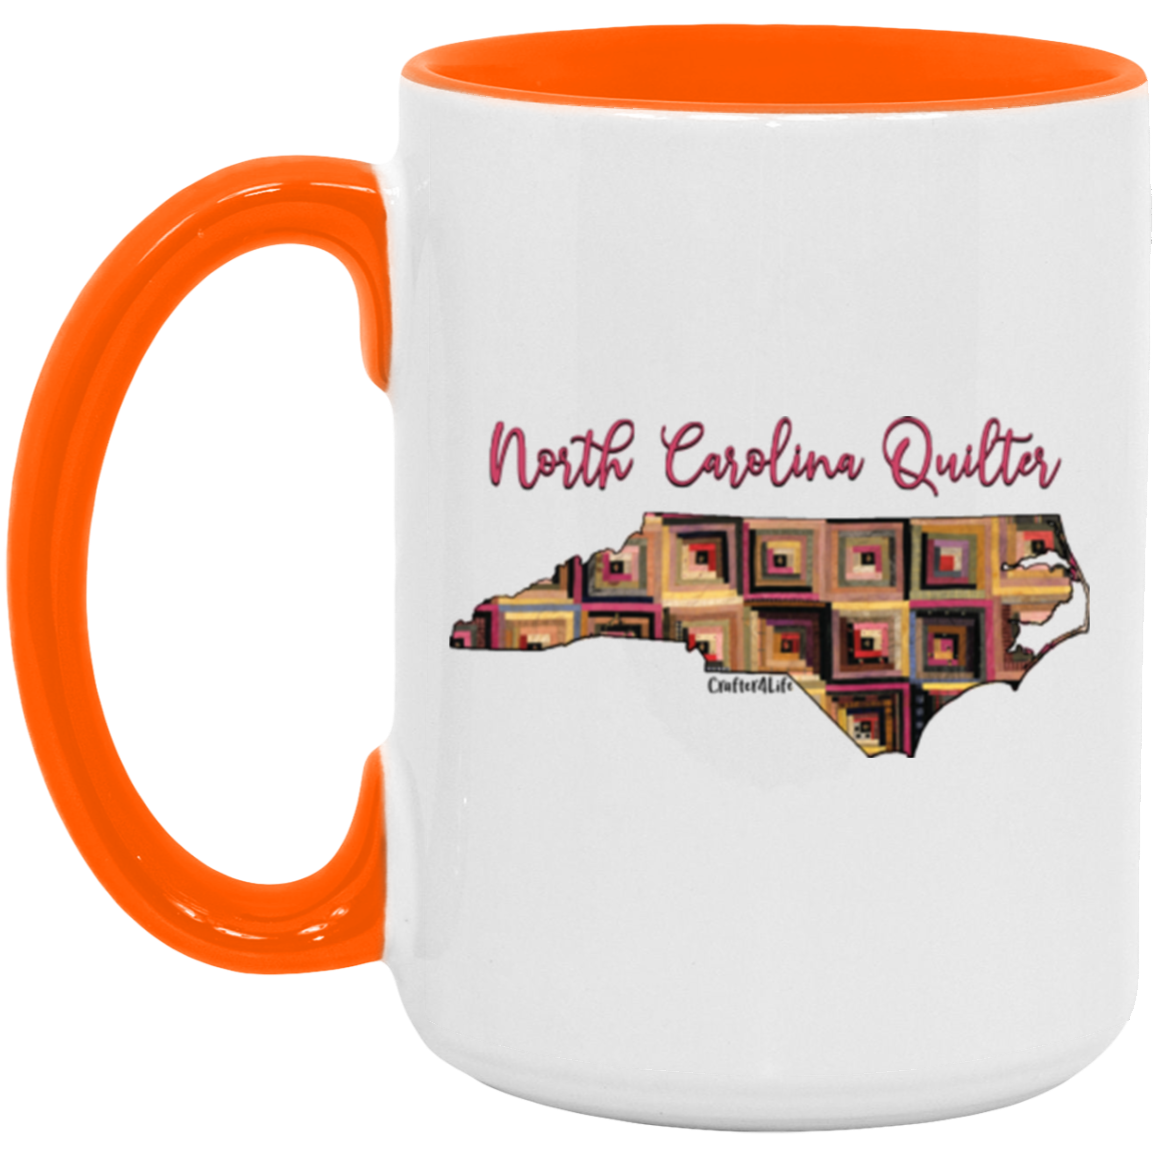 North Carolina Quilter Mugs